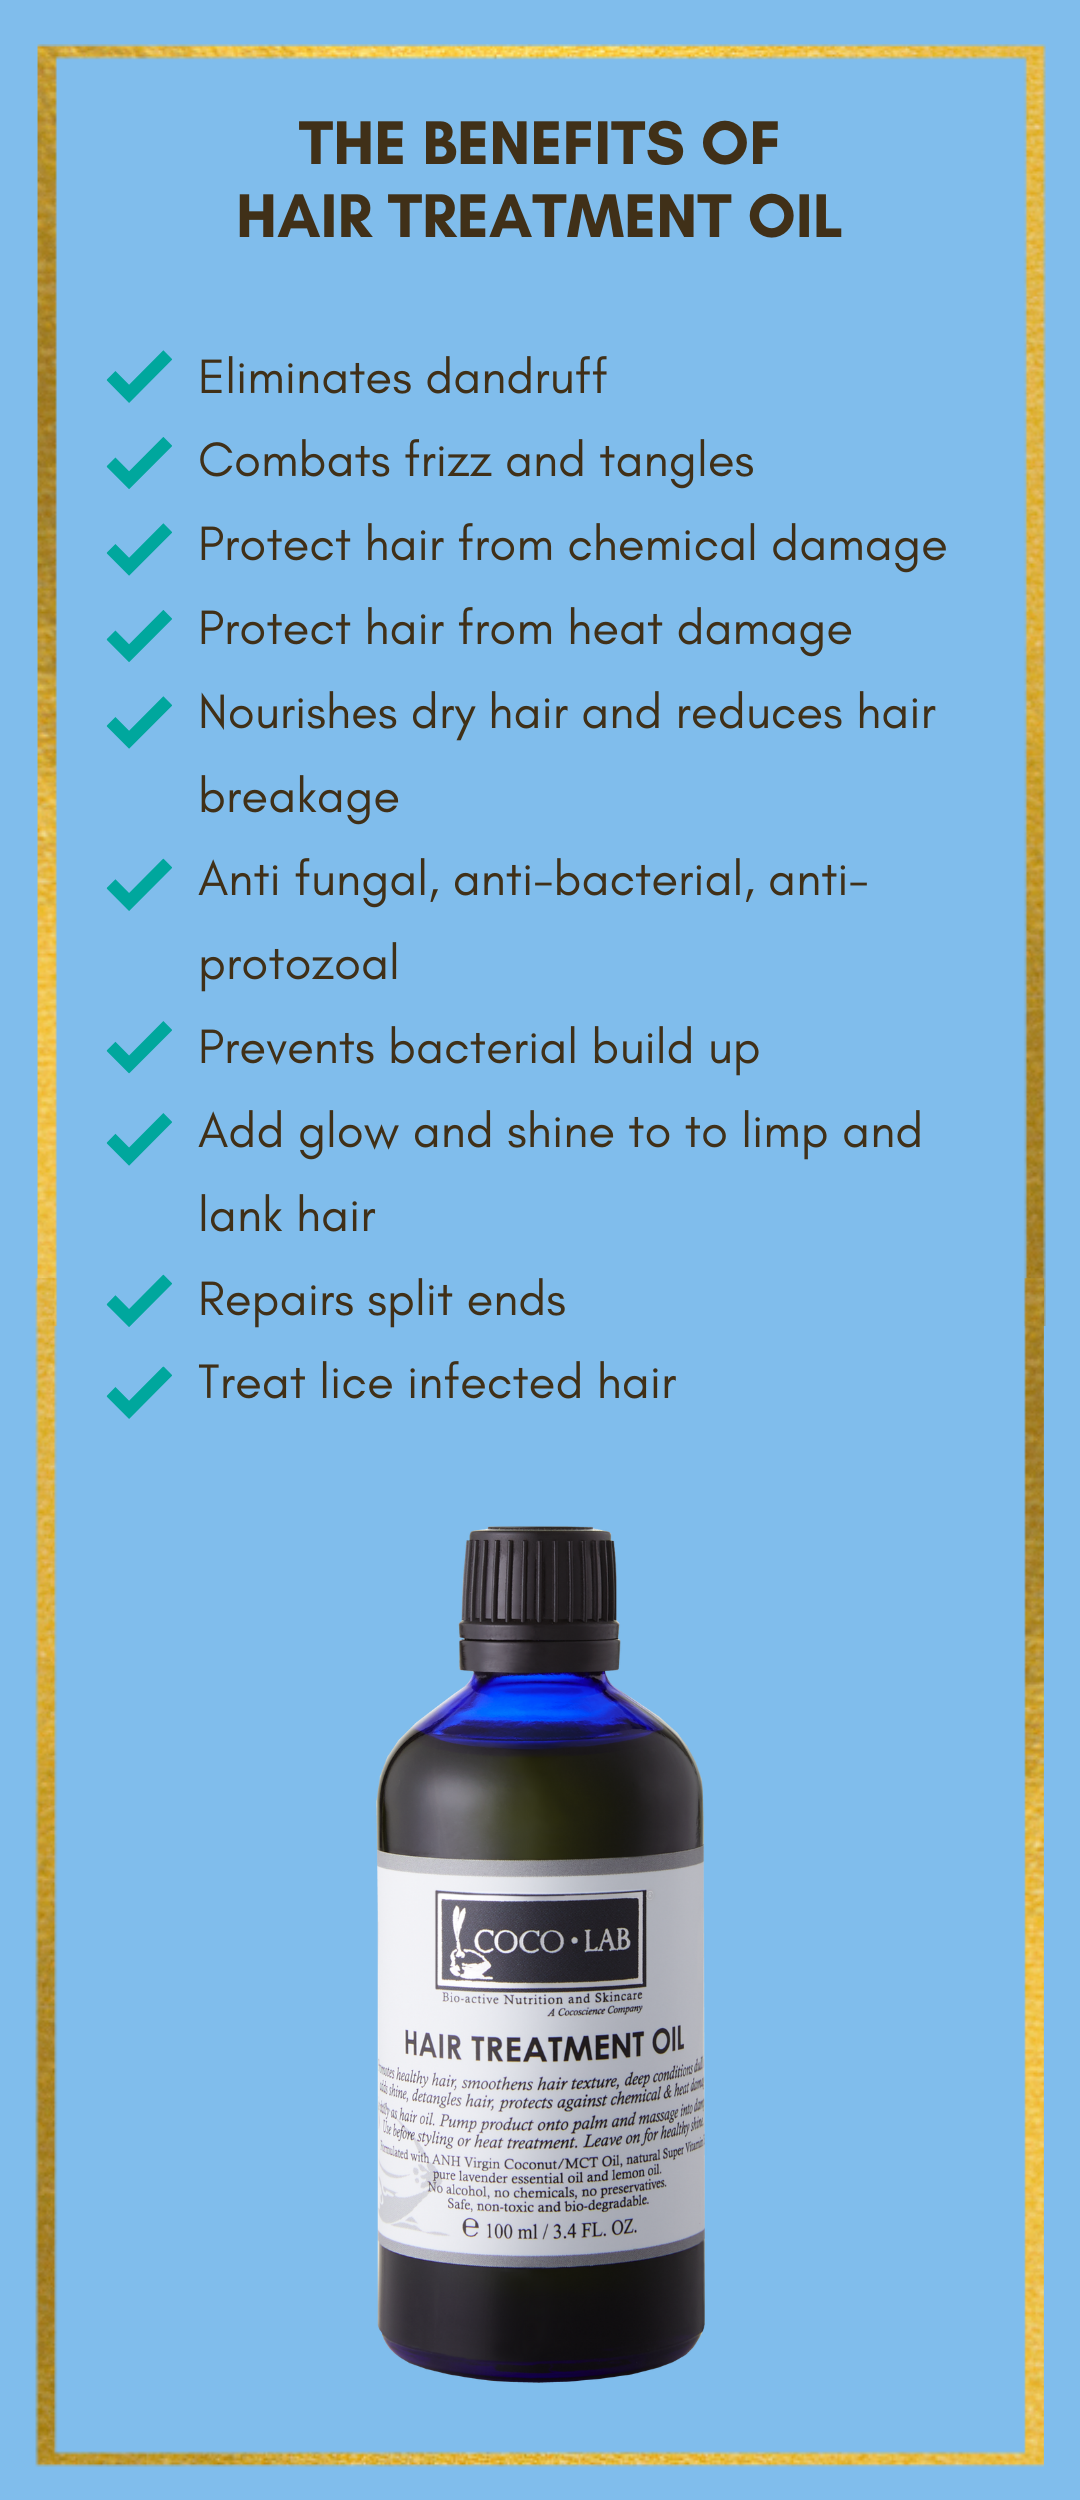 Hair Treatment Oil Description 3.png